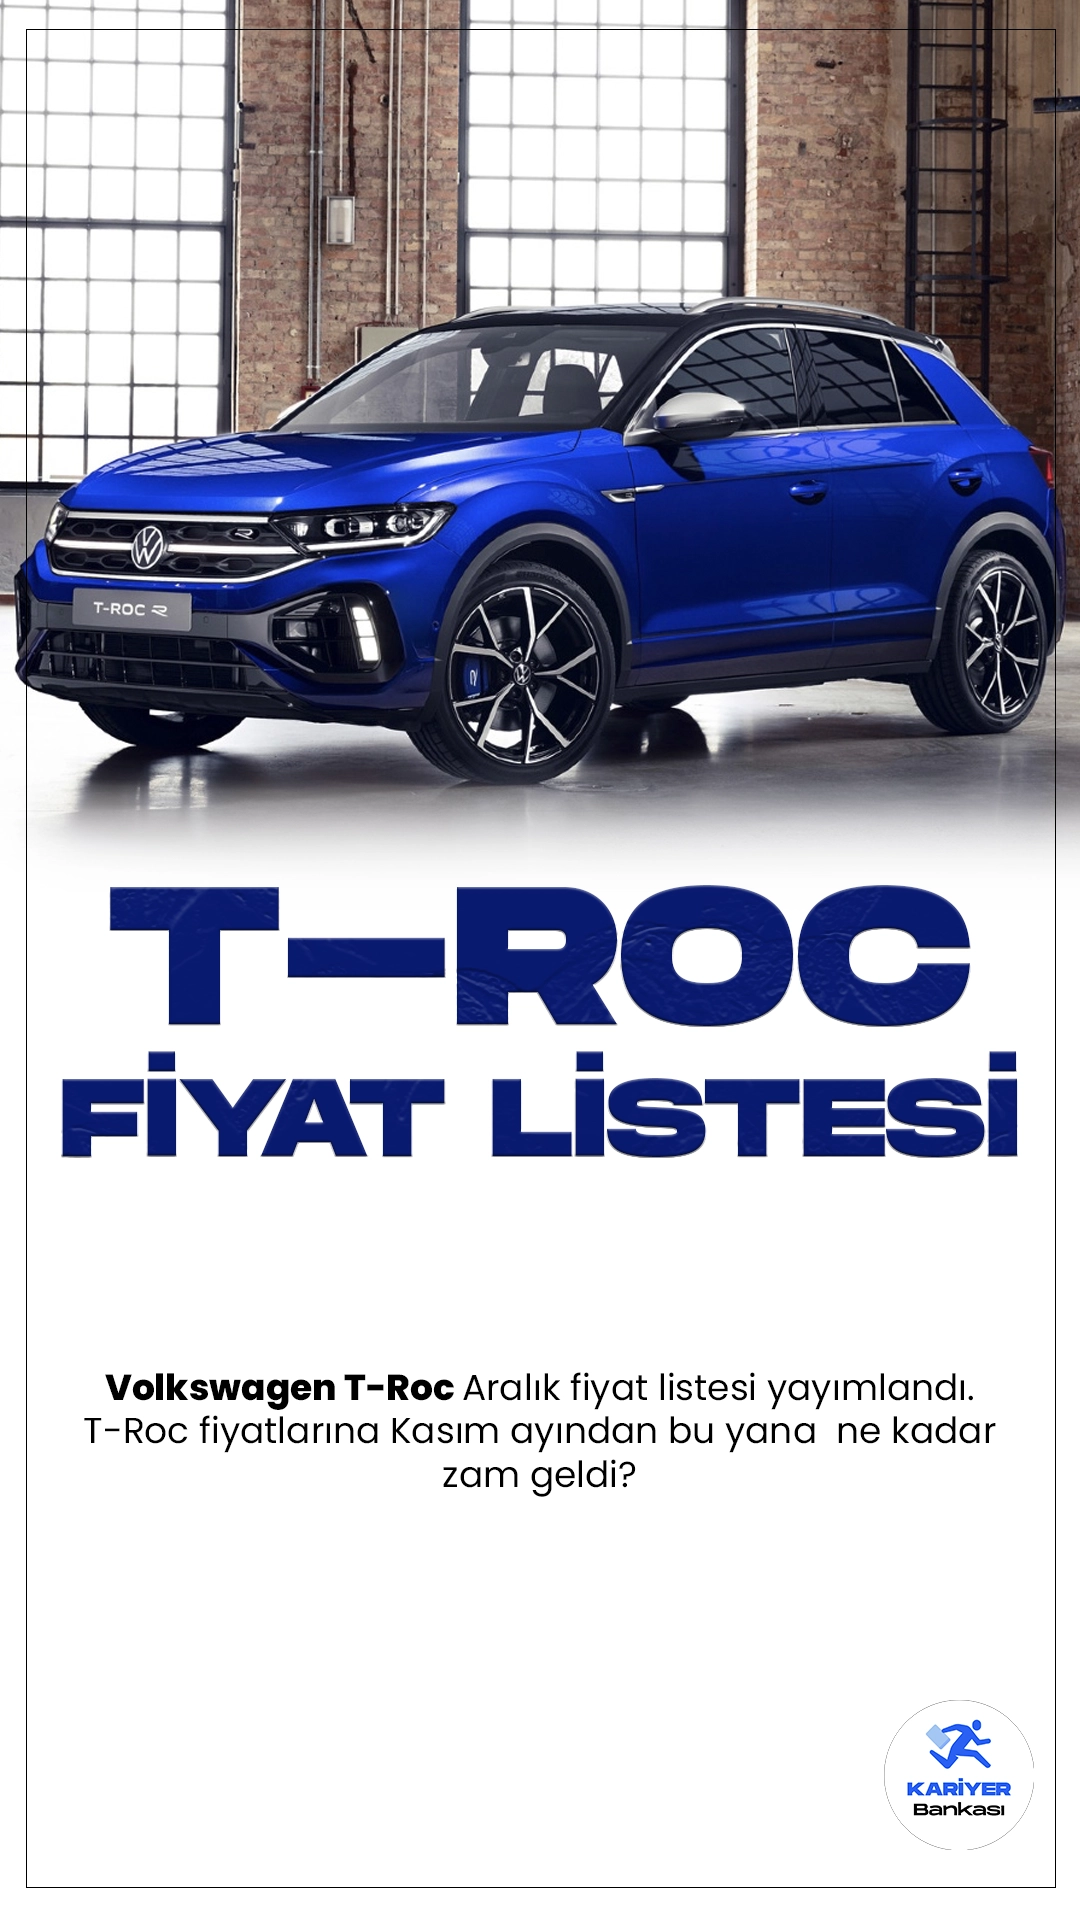 Volkswagen T-Roc Aralık 2023 Fiyat Listesi Yayımlandı.Alman otomotiv devi Volkswagen, dinamik tasarımı ve yüksek performansı bir araya getiren T-Roc modeli ile otomobil tutkunlarını etkilemeye devam ediyor. T-Roc, kompakt SUV segmentinde öne çıkan bir model olma özelliği taşıyor. İleri teknoloji donanımları ve şık iç mekan tasarımıyla dikkat çeken araç, sürüş deneyimini üst seviyeye taşıyor.